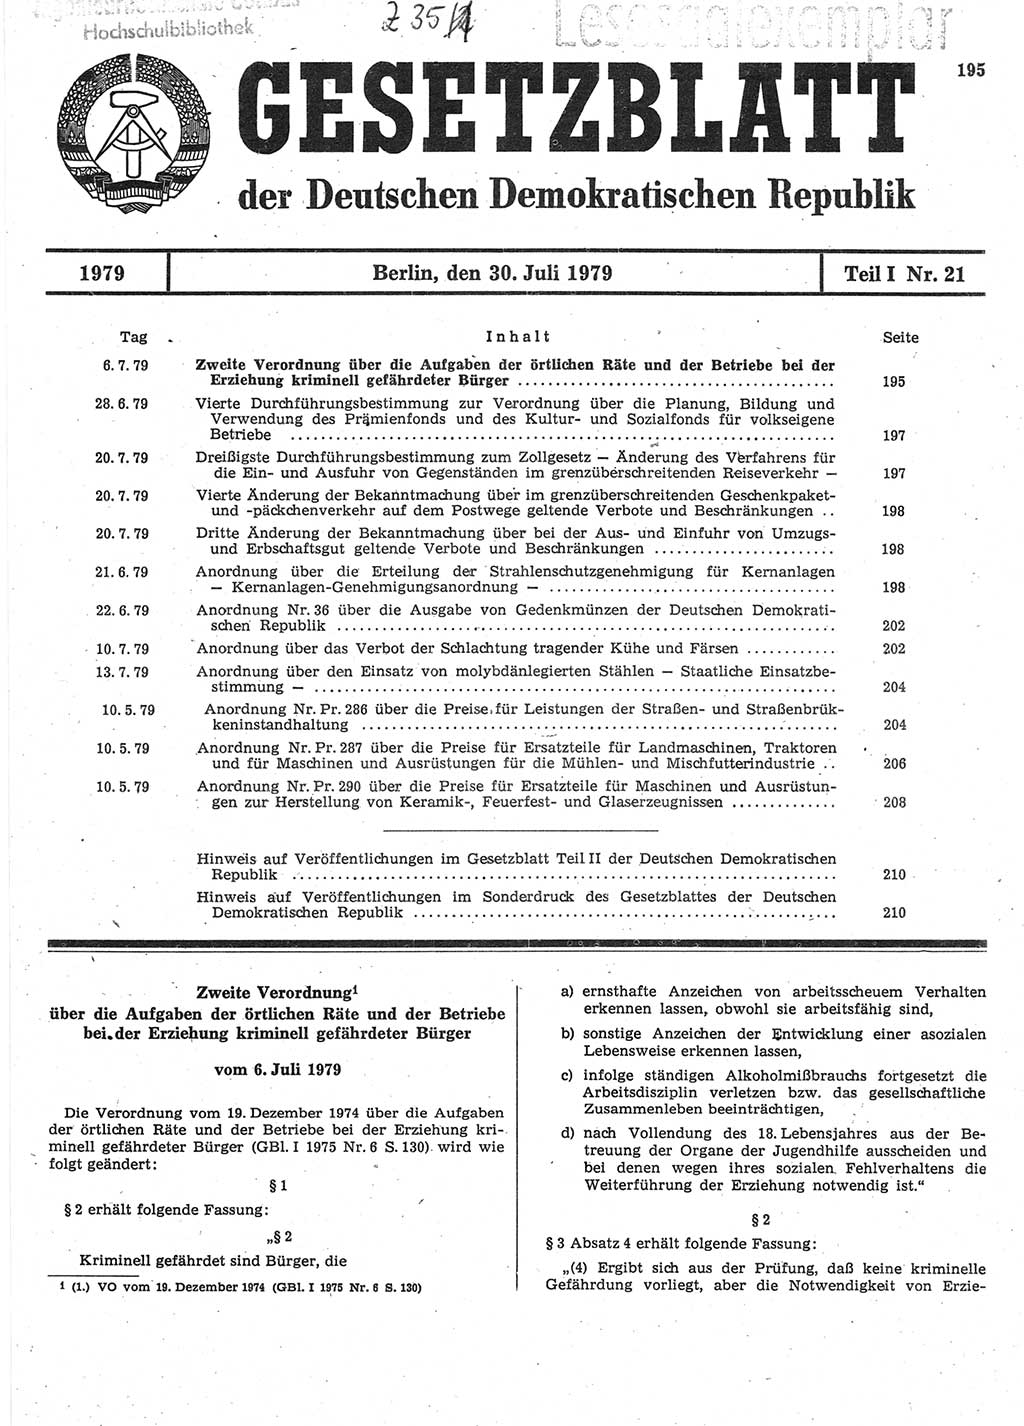 Gesetzblatt (GBl.) der Deutschen Demokratischen Republik (DDR) Teil Ⅰ 1979, Seite 195 (GBl. DDR Ⅰ 1979, S. 195)